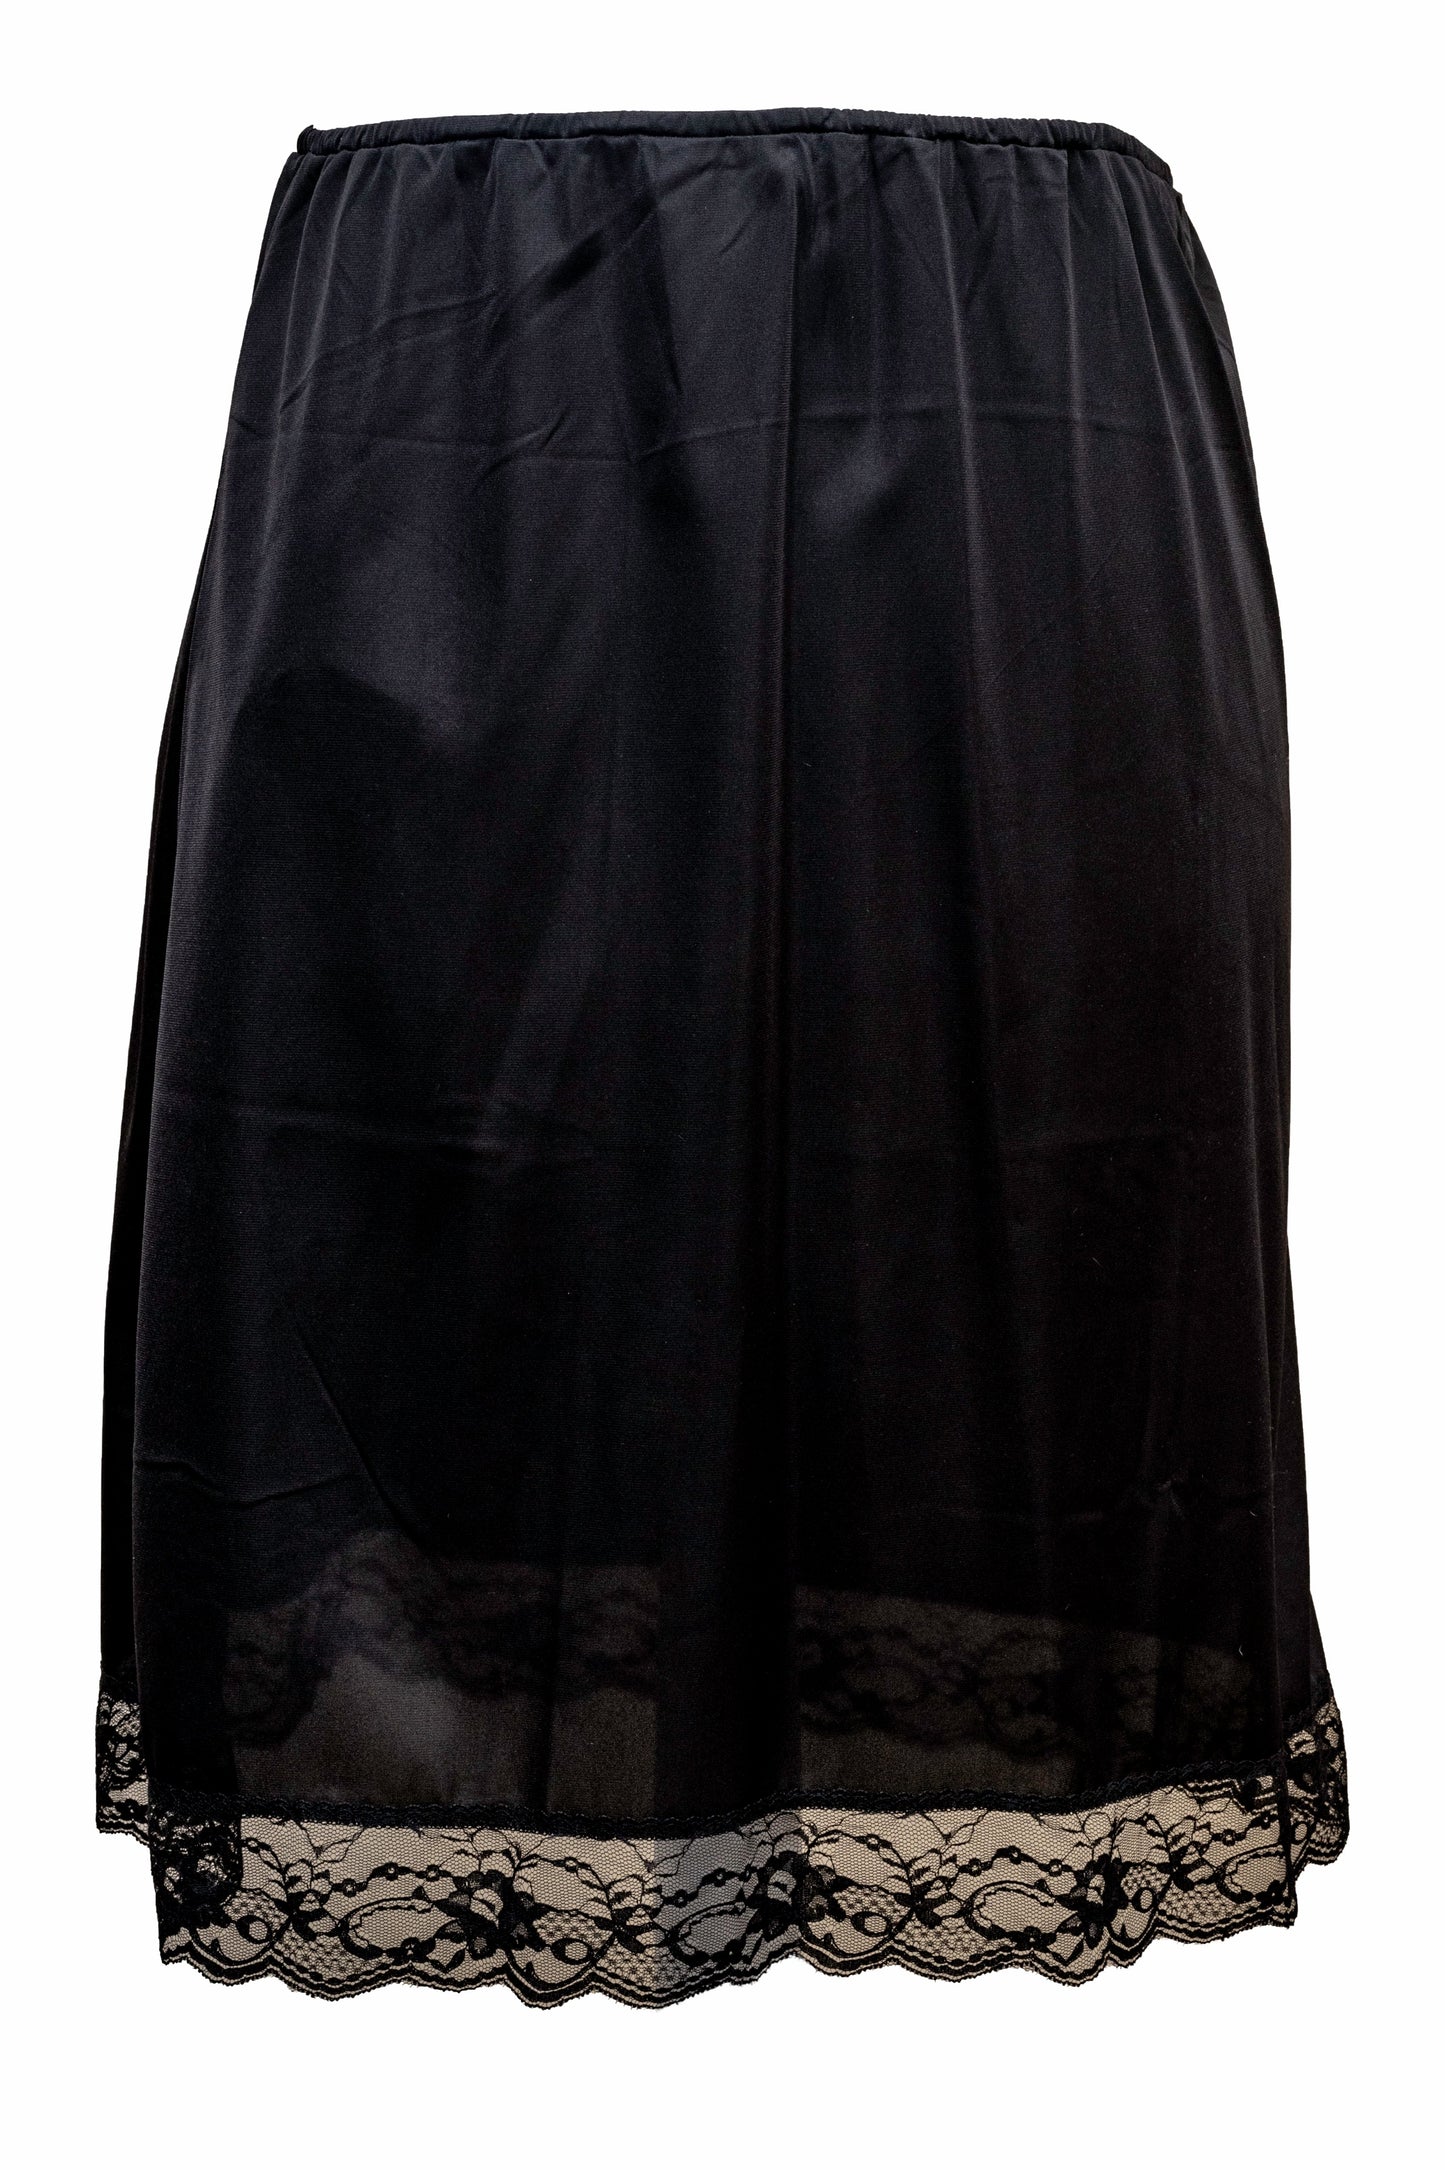 Ladies-Half Slip Petticoat-18''Length-White